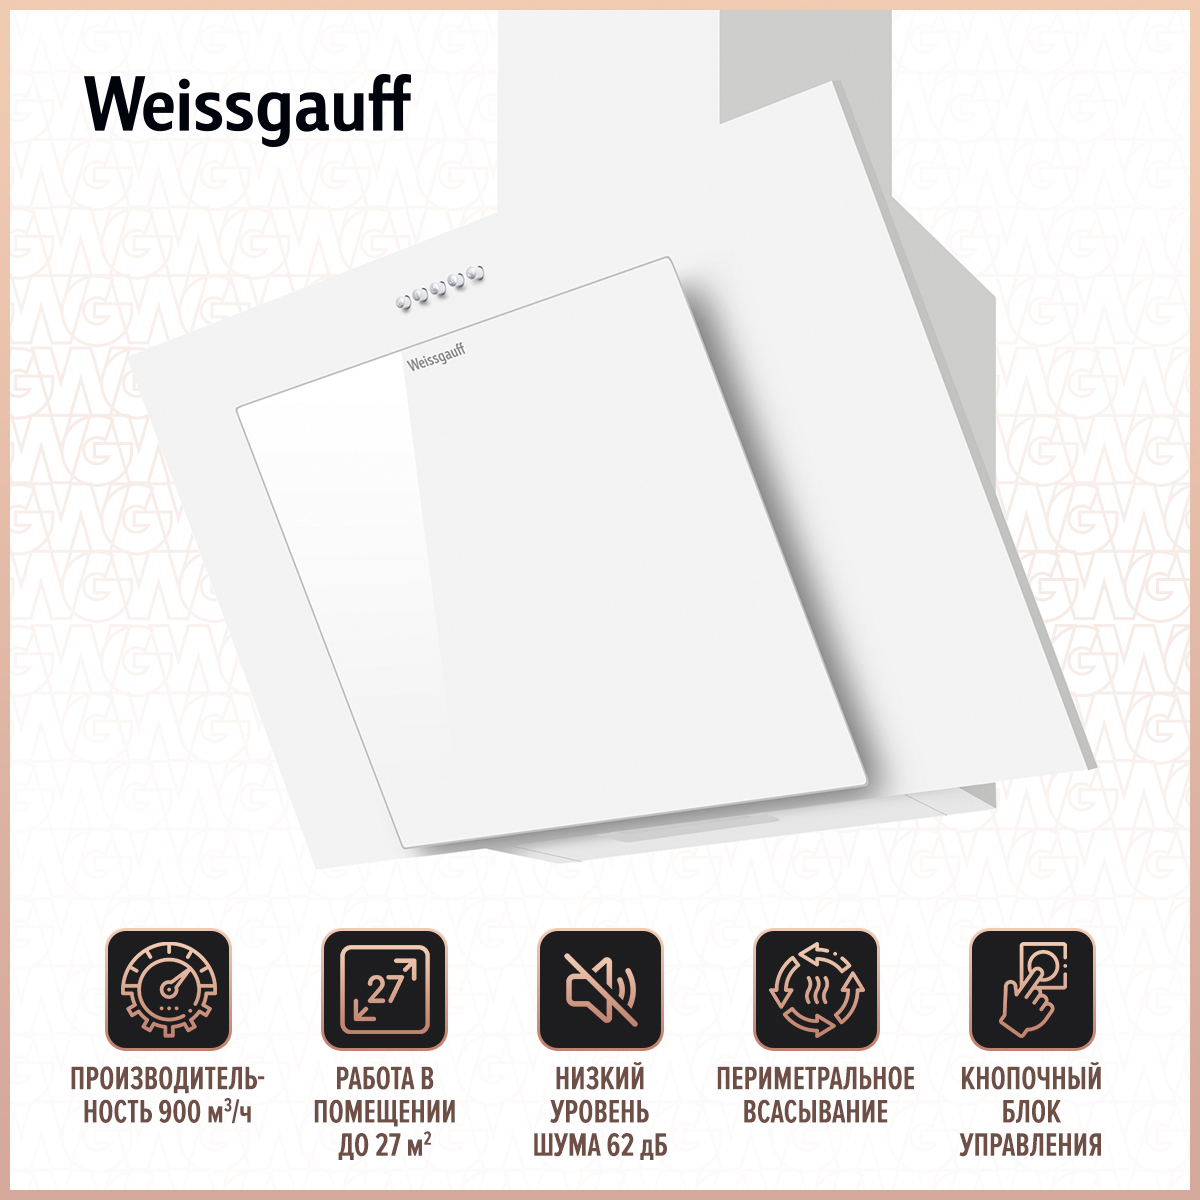 Вытяжка настенная Weissgauff SIGMA 60 PB WH White вытяжка weissgauff wgh 6035 pb white glass